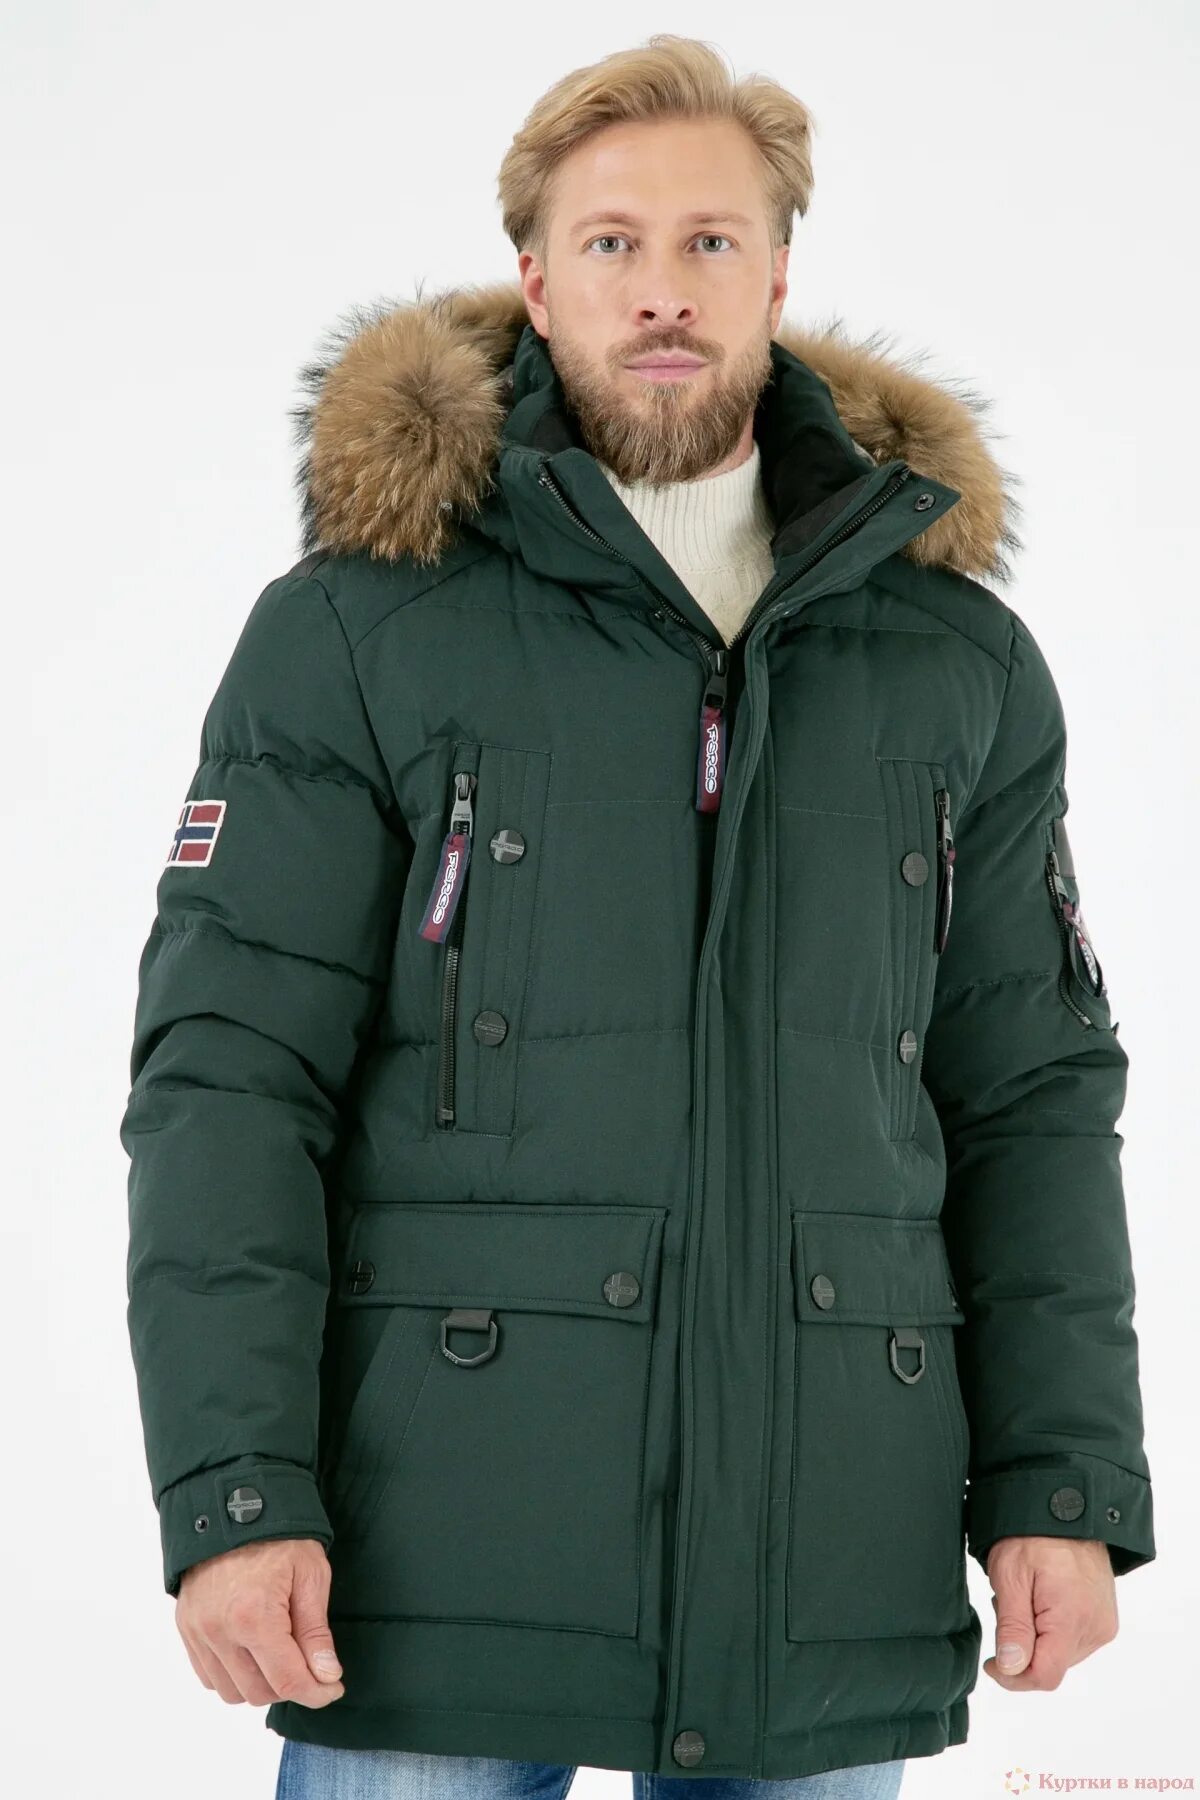 Зеленая аляска. Зимняя куртка Fergo f 630-8151. Аляска мужская зимняя зеленая. Куртка Fergo Norge f17-0510.